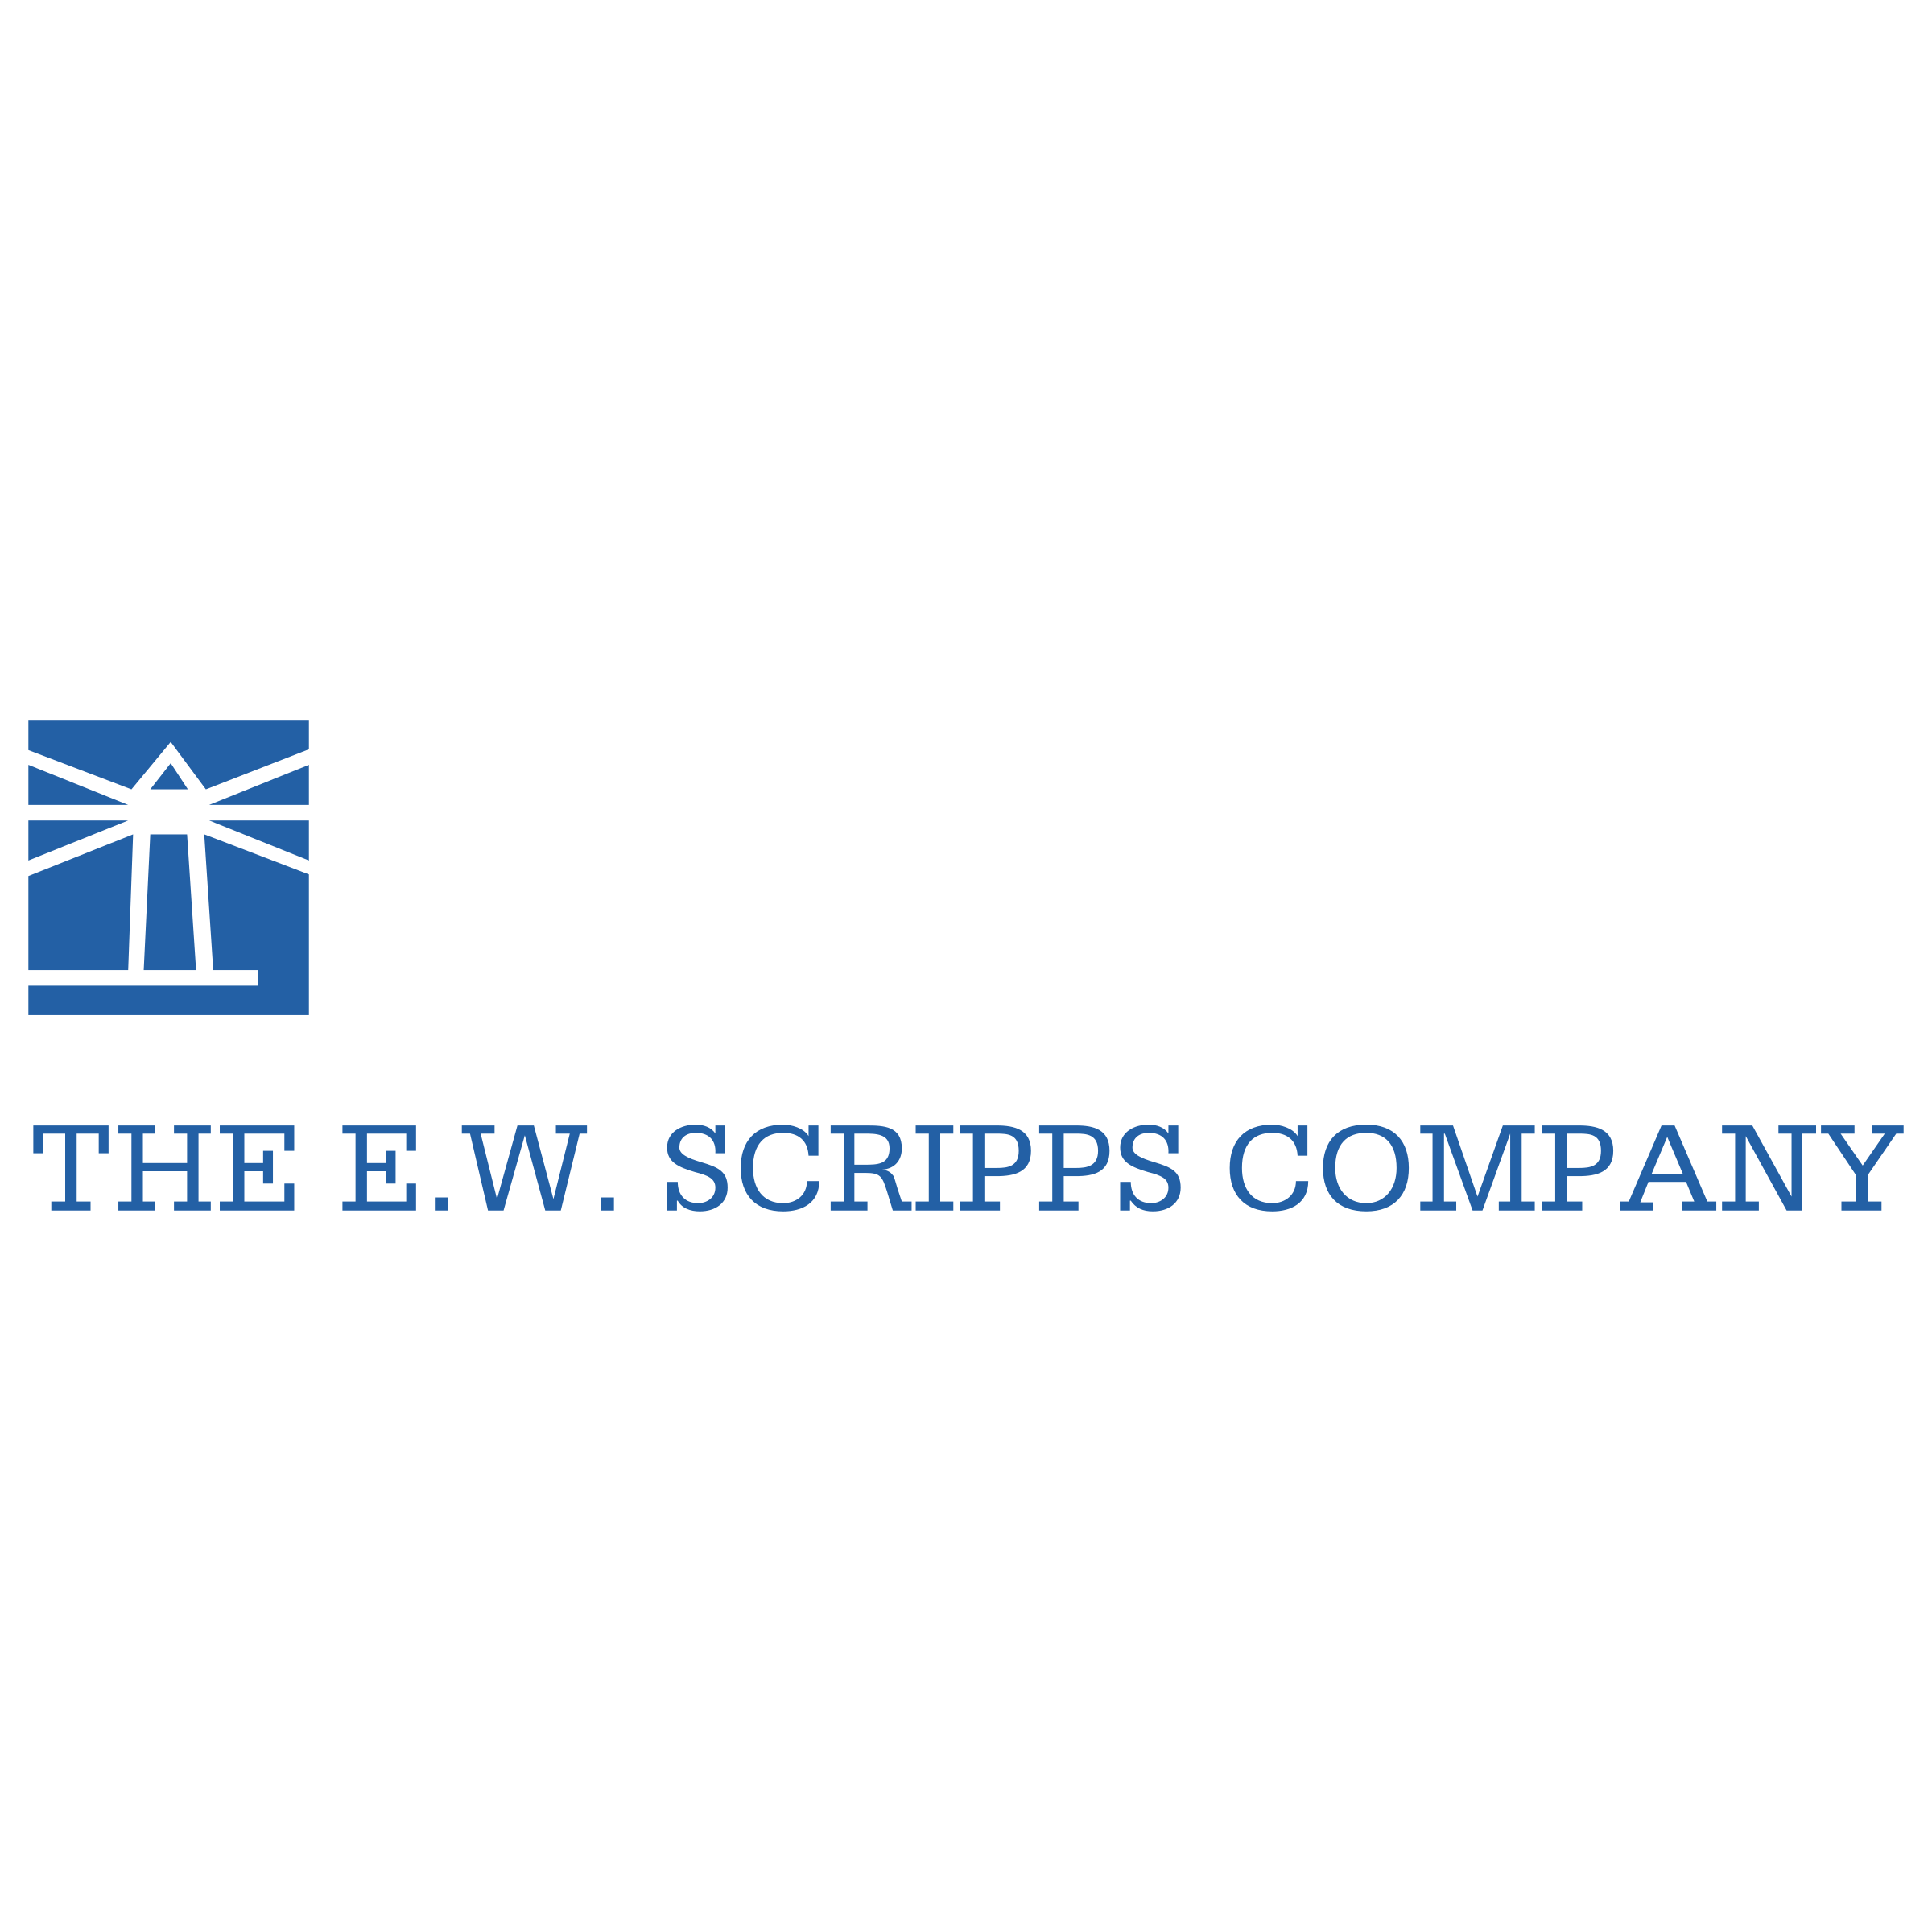 Scripps Company Logo - The E W Scripps Company Logo PNG Transparent & SVG Vector - Freebie ...